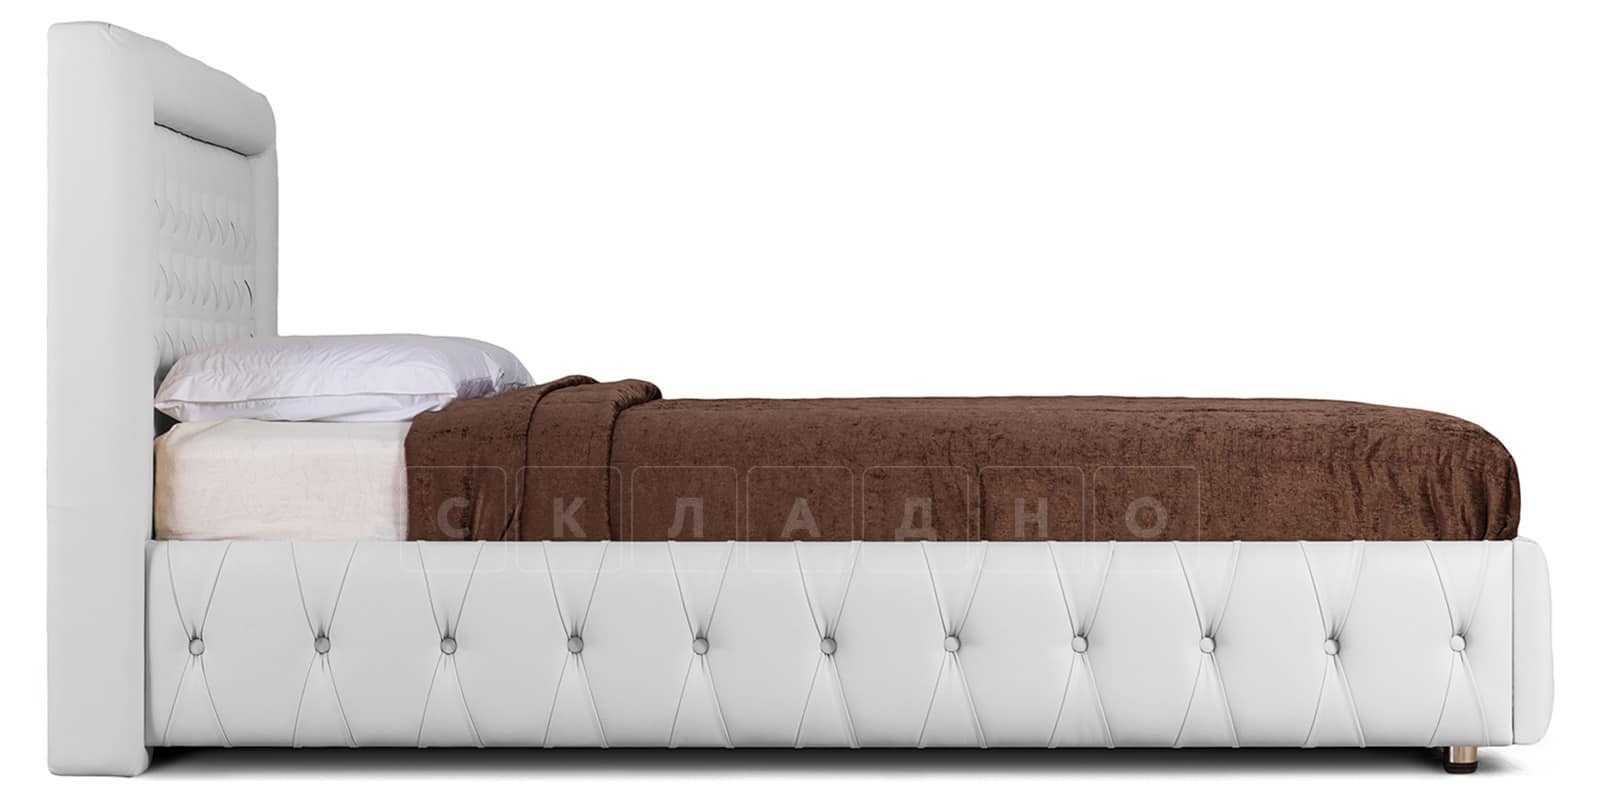 Мягкая кровать Малибу 160см экокожа белого цвета вариант 7 фото 3 | интернет-магазин Складно